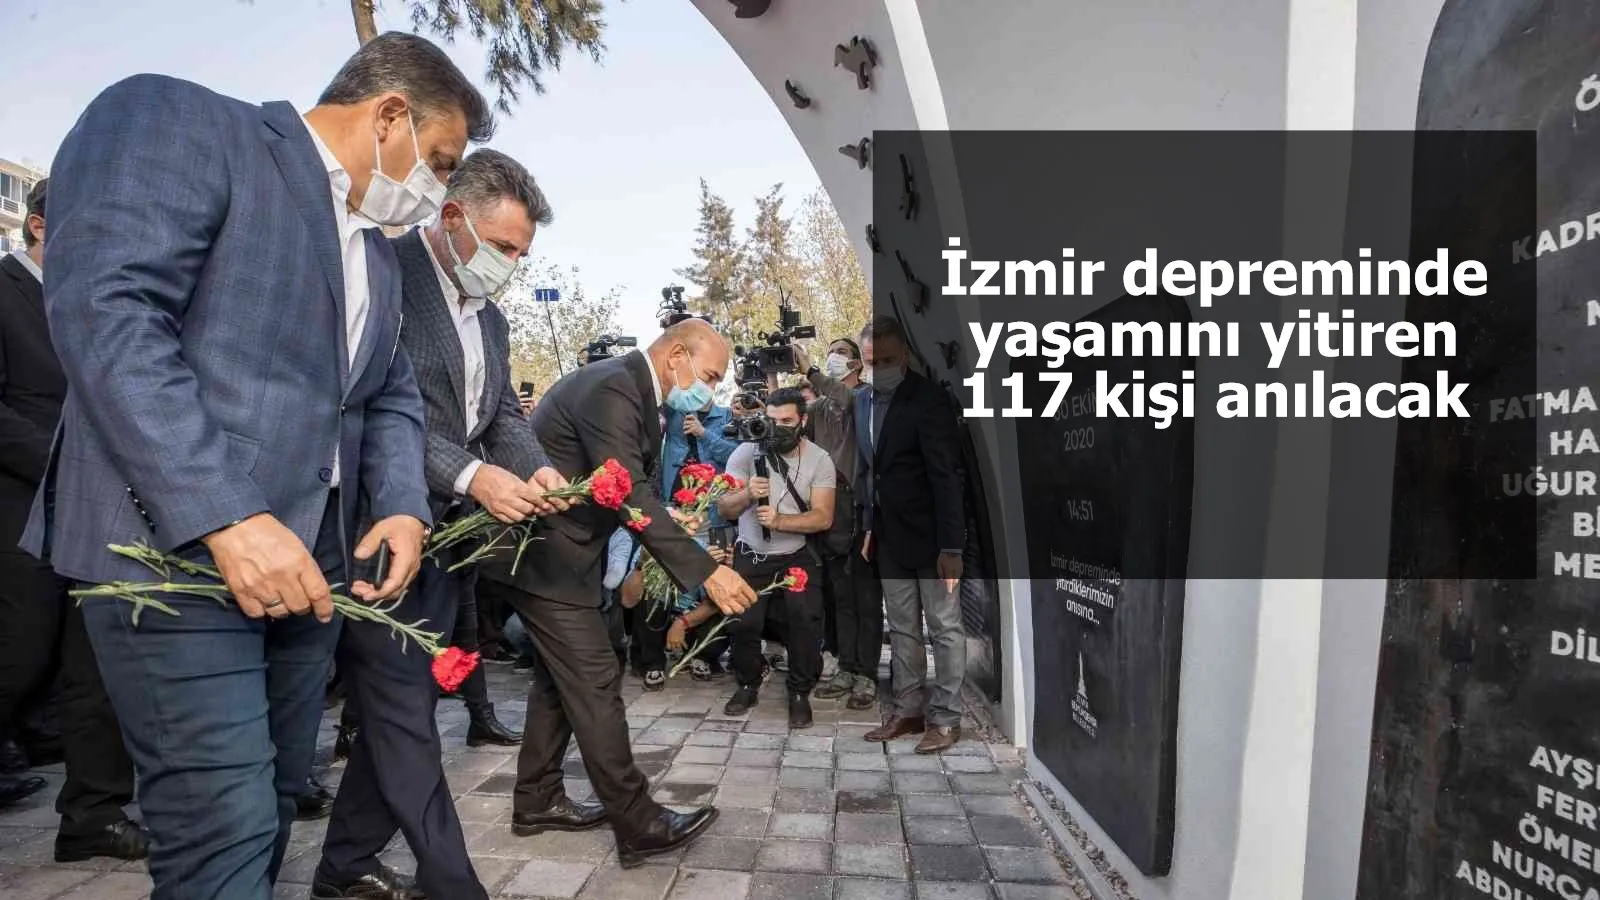 İzmir depreminde yaşamını yitiren 117 kişi anılacak